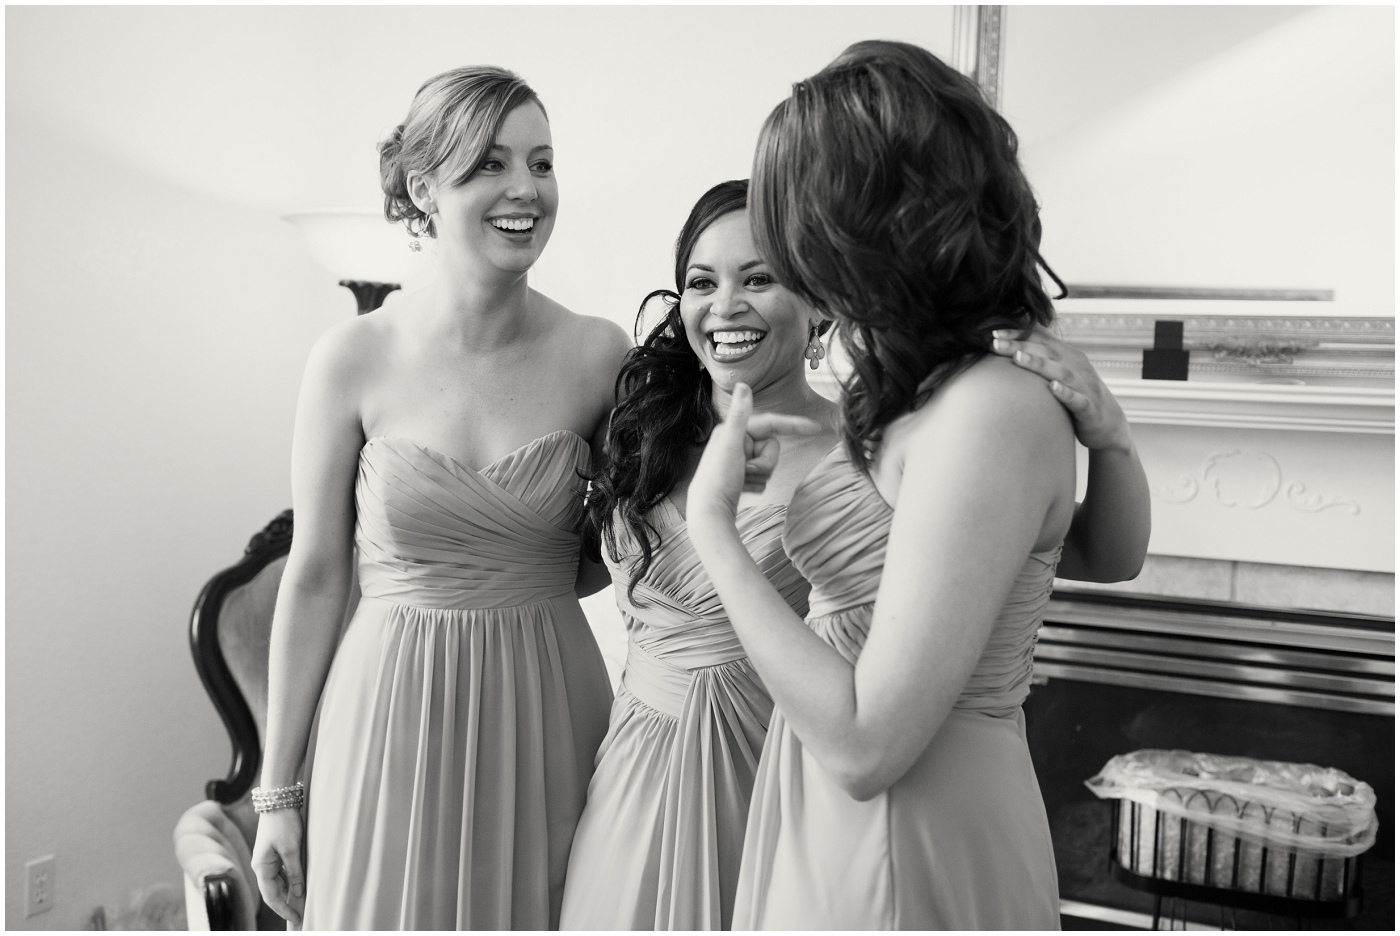 picture of bridesmaids laugihing